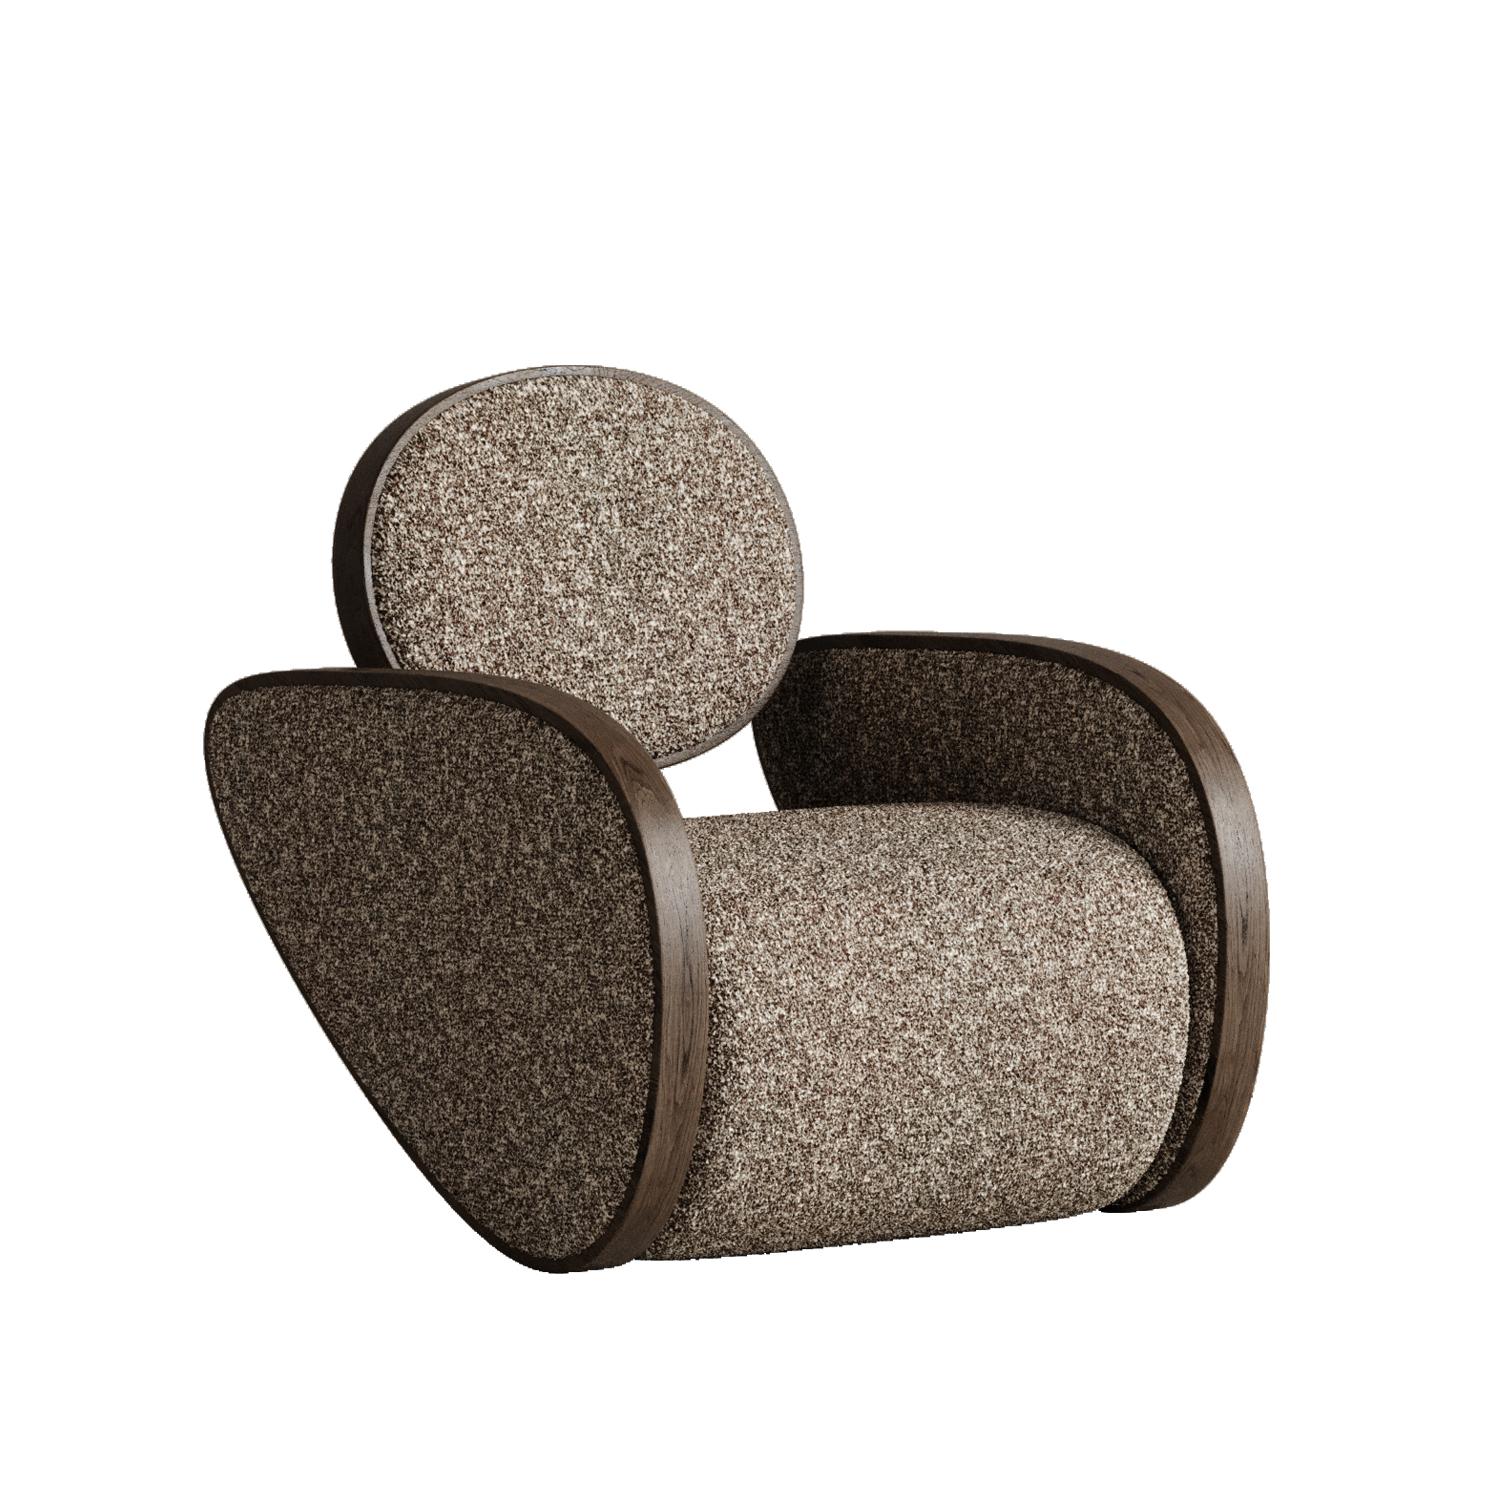 Nautilus-Stuhl in Schokolade von Plyus Design
Abmessungen: T 100 x B 80 x H 86 cm
MATERIALIEN:  Holz, HR-Schaum, Polyesterwatte, Stoffpolsterung.

Stuhl 